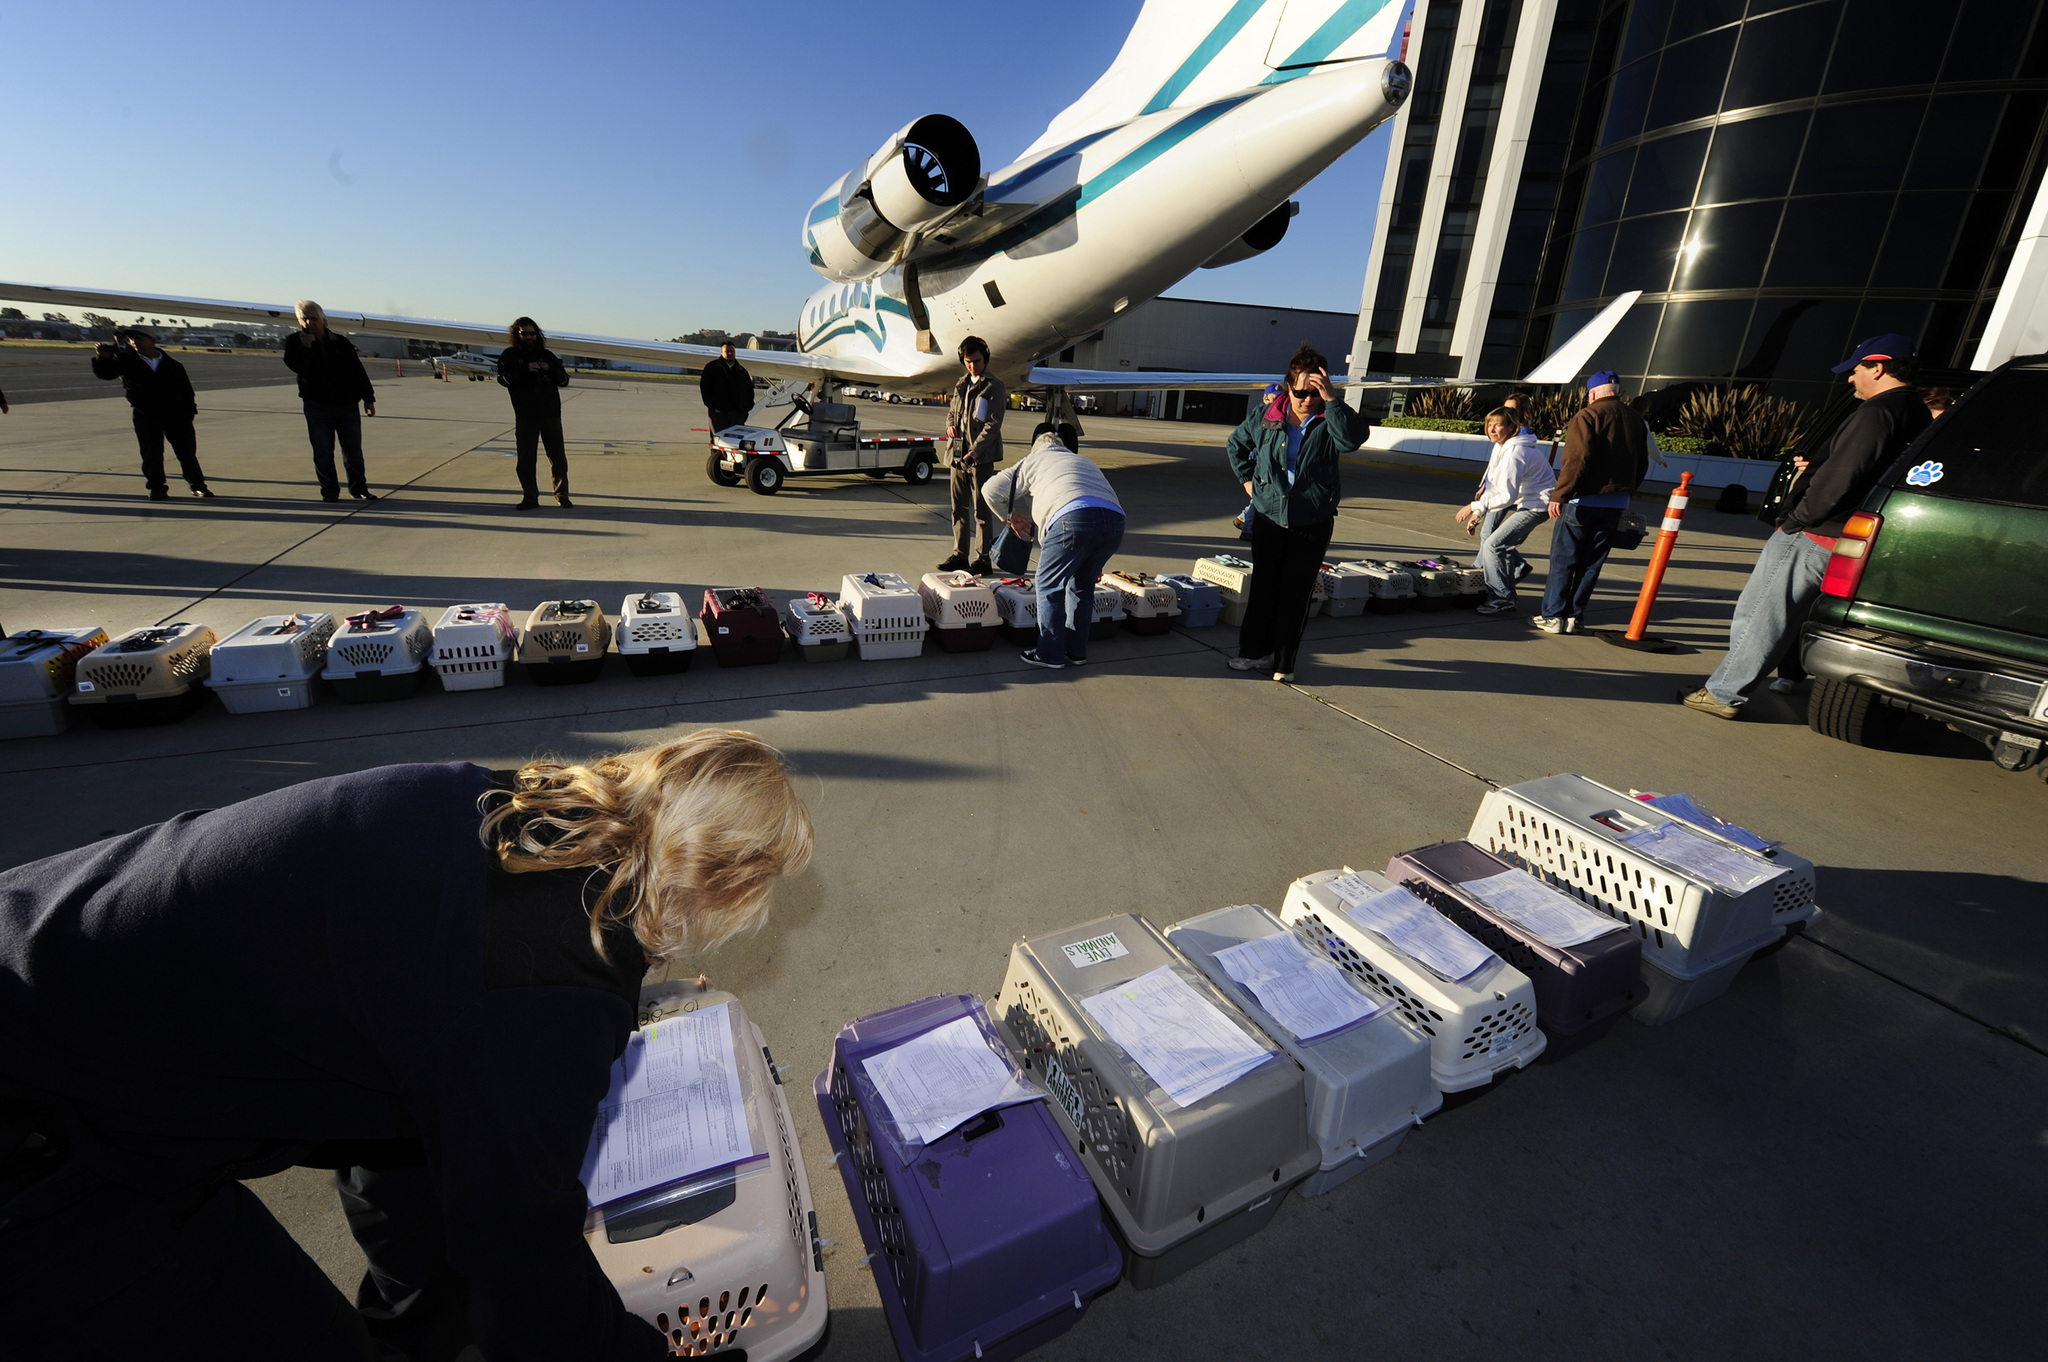 Kisállatszállítás repülőgépen - a személyzet tagjai a szállítóboxokat rendezgetik